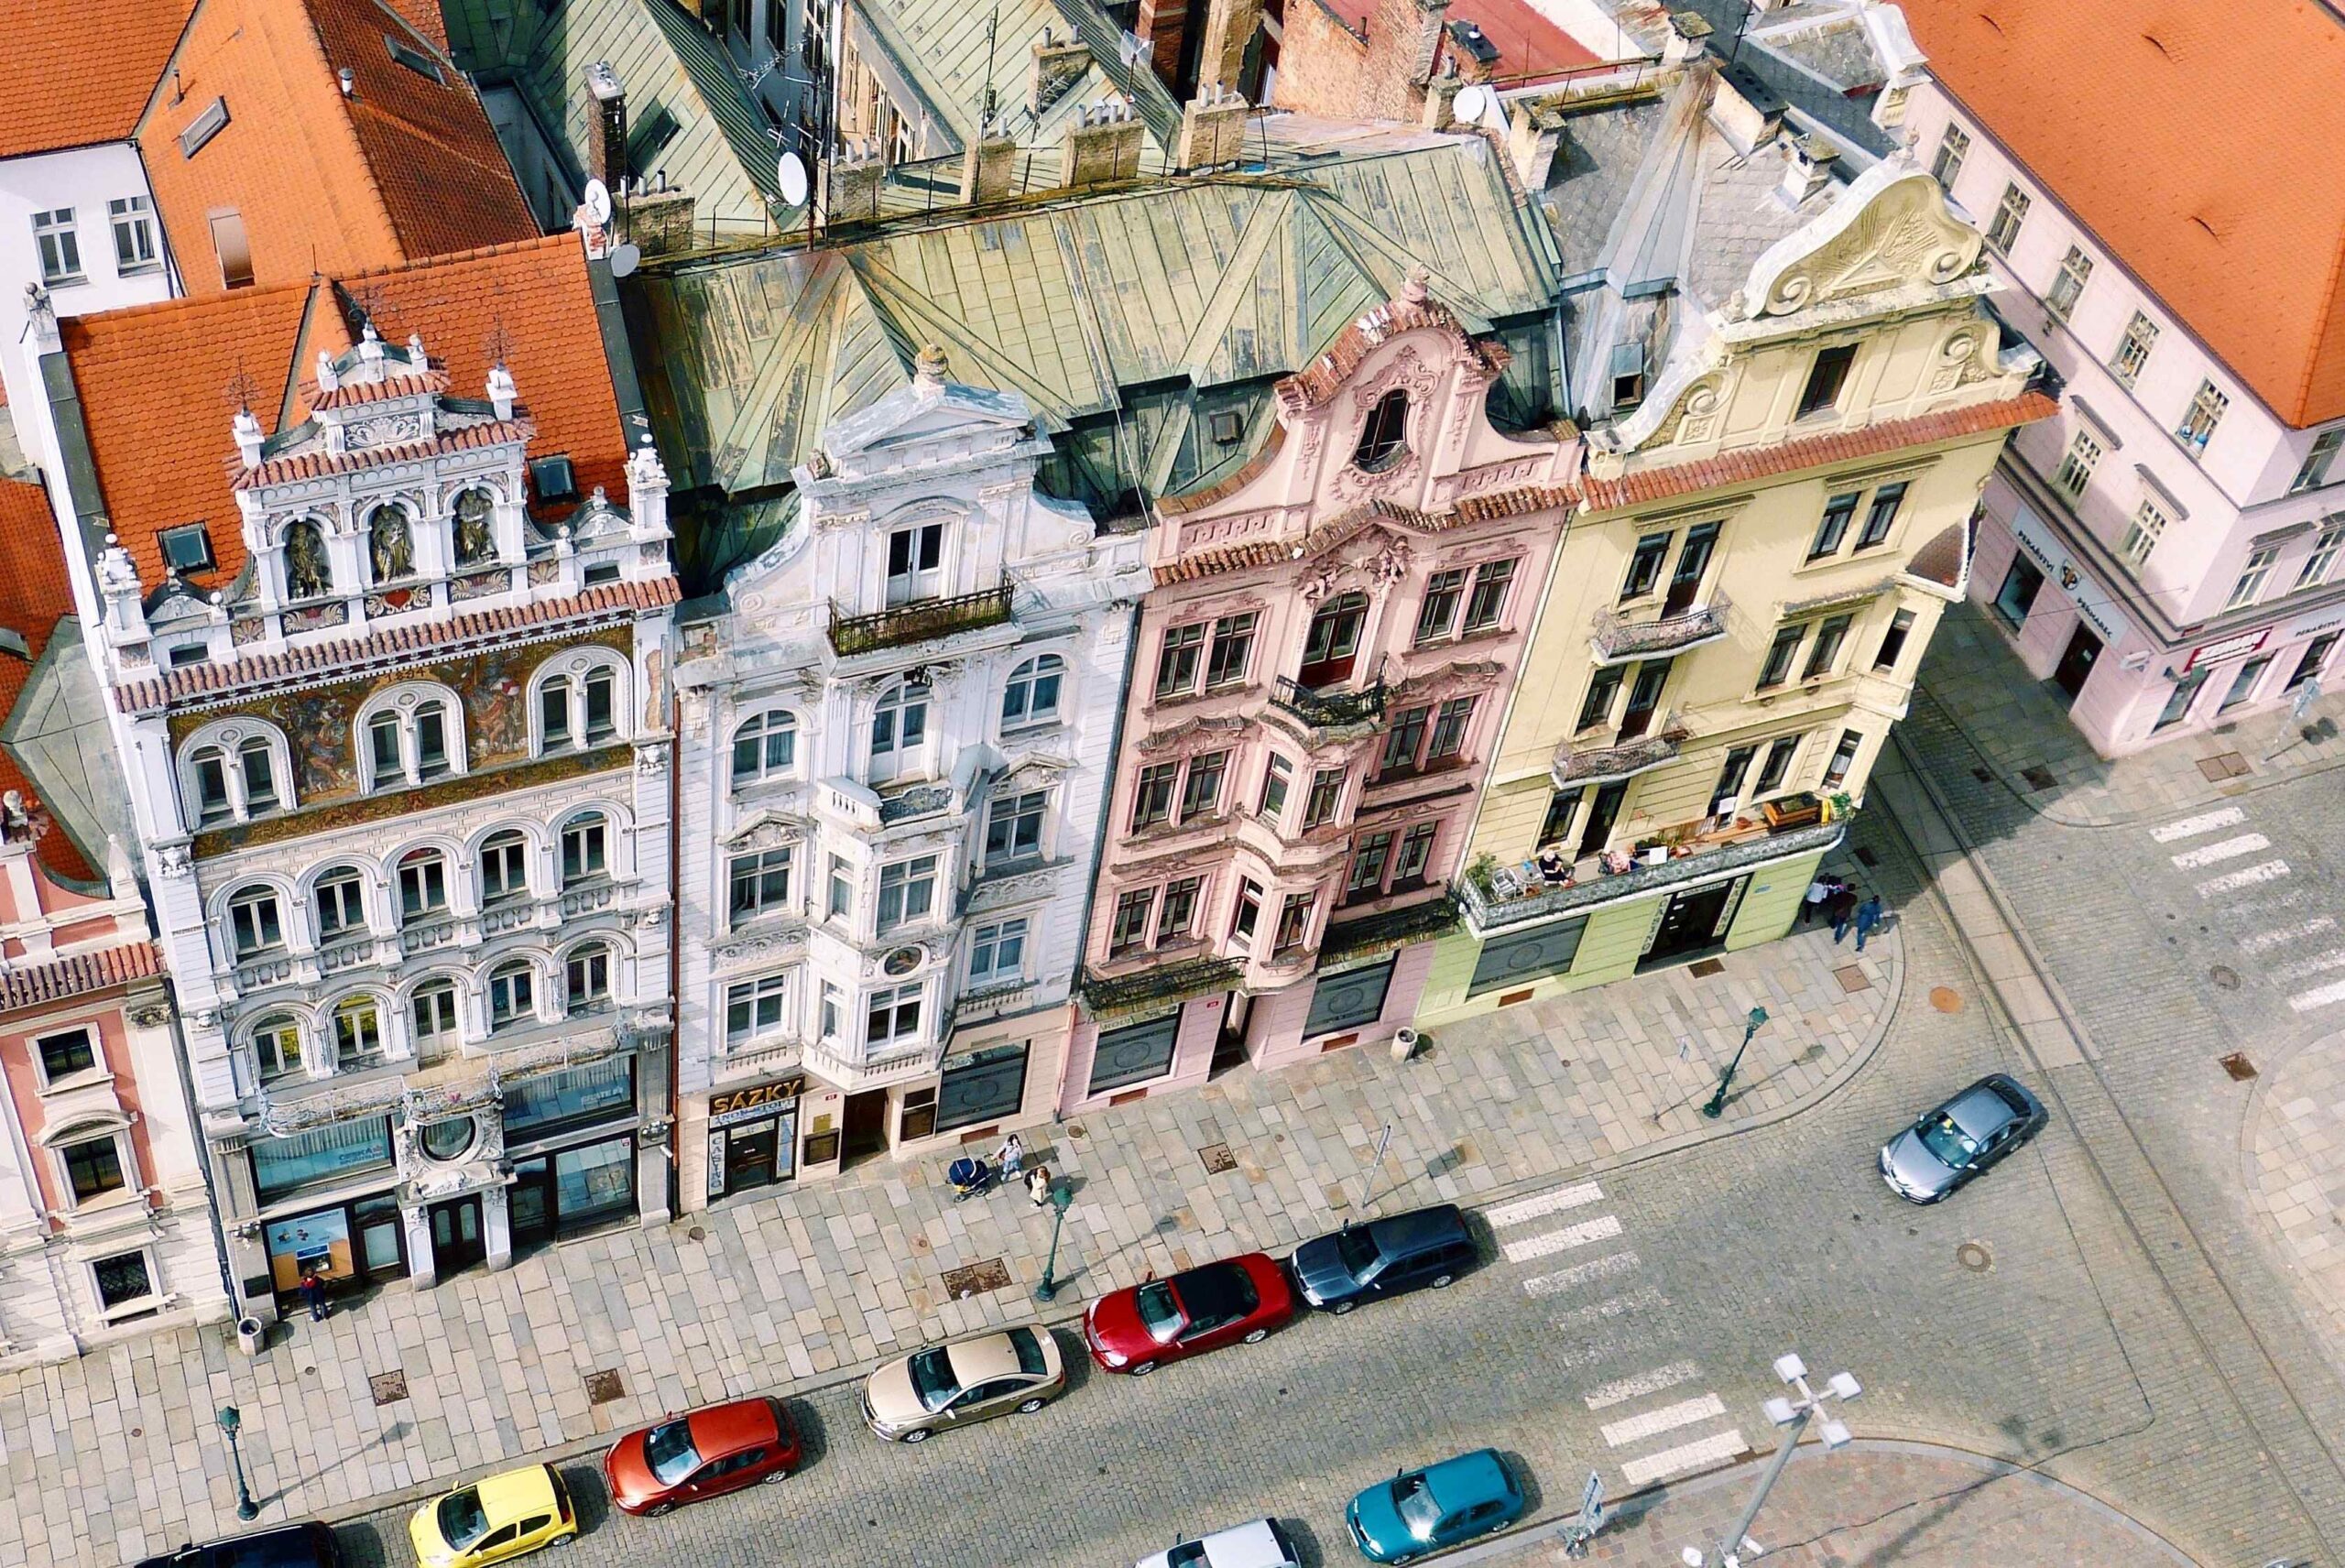 Czech urban policy